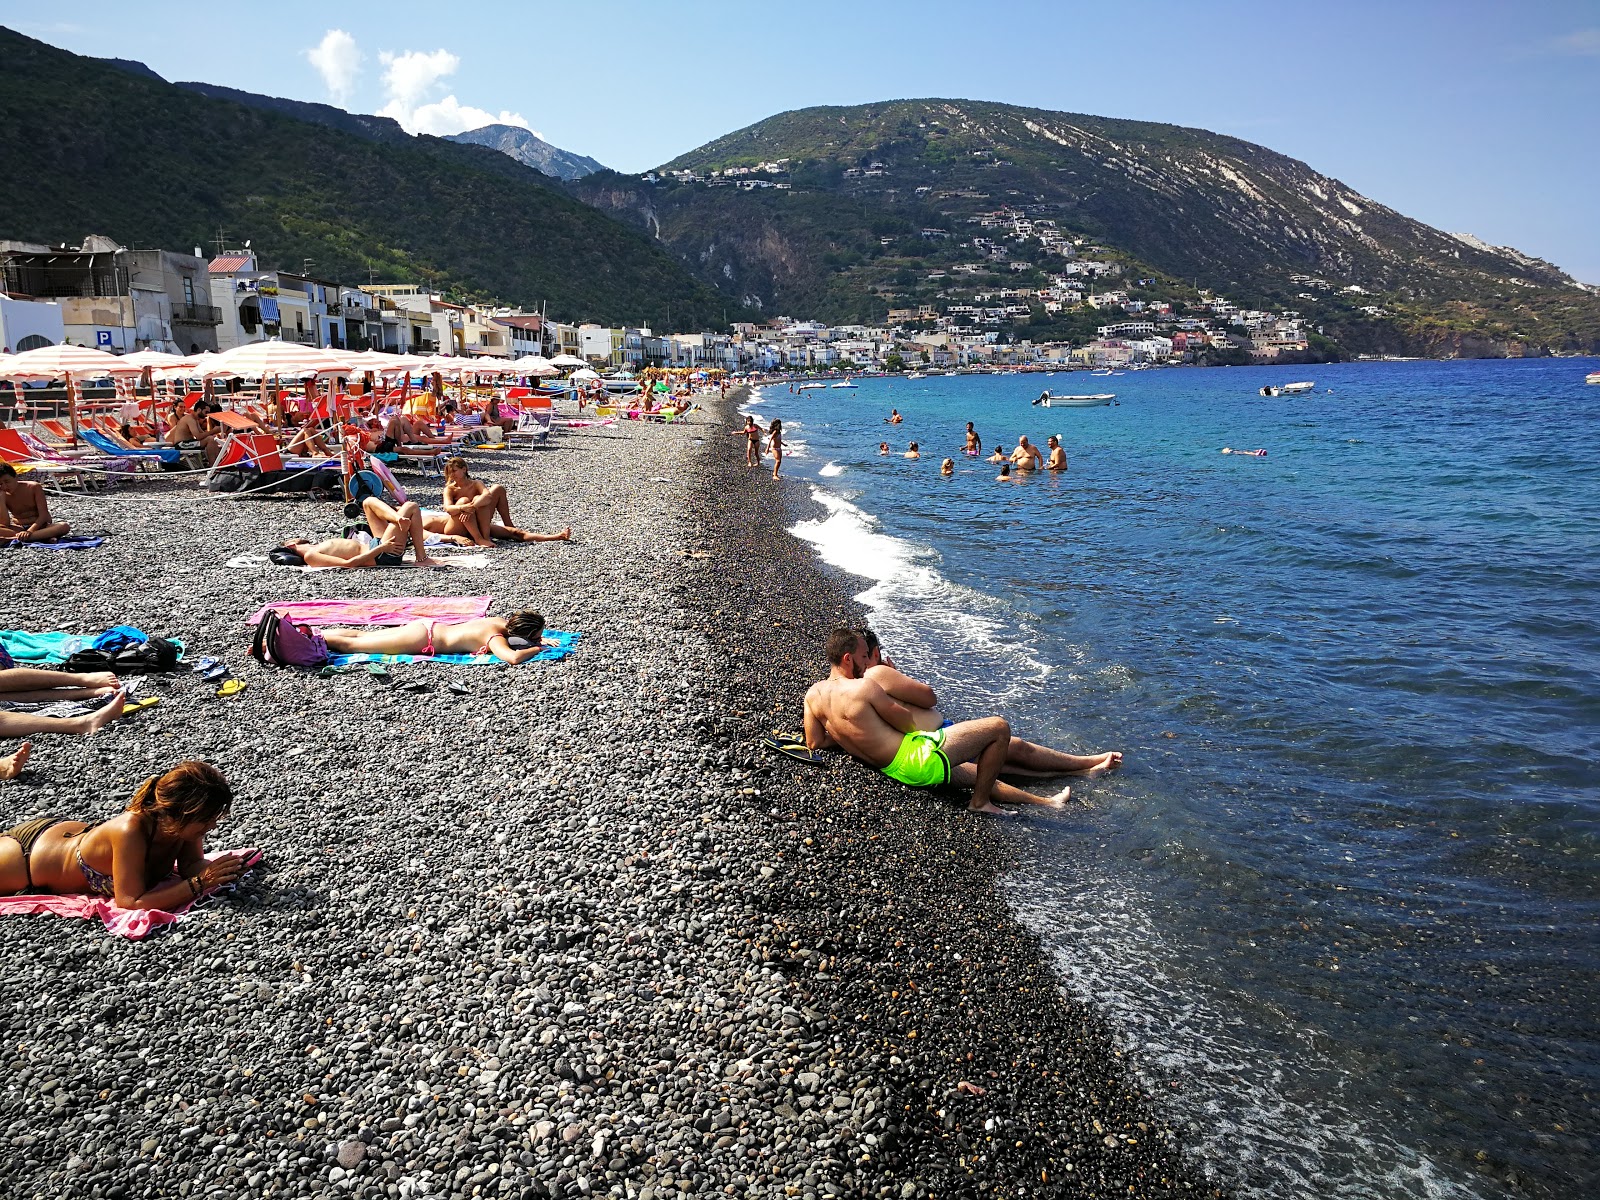 Zdjęcie Canneto beach - popularne miejsce wśród znawców relaksu